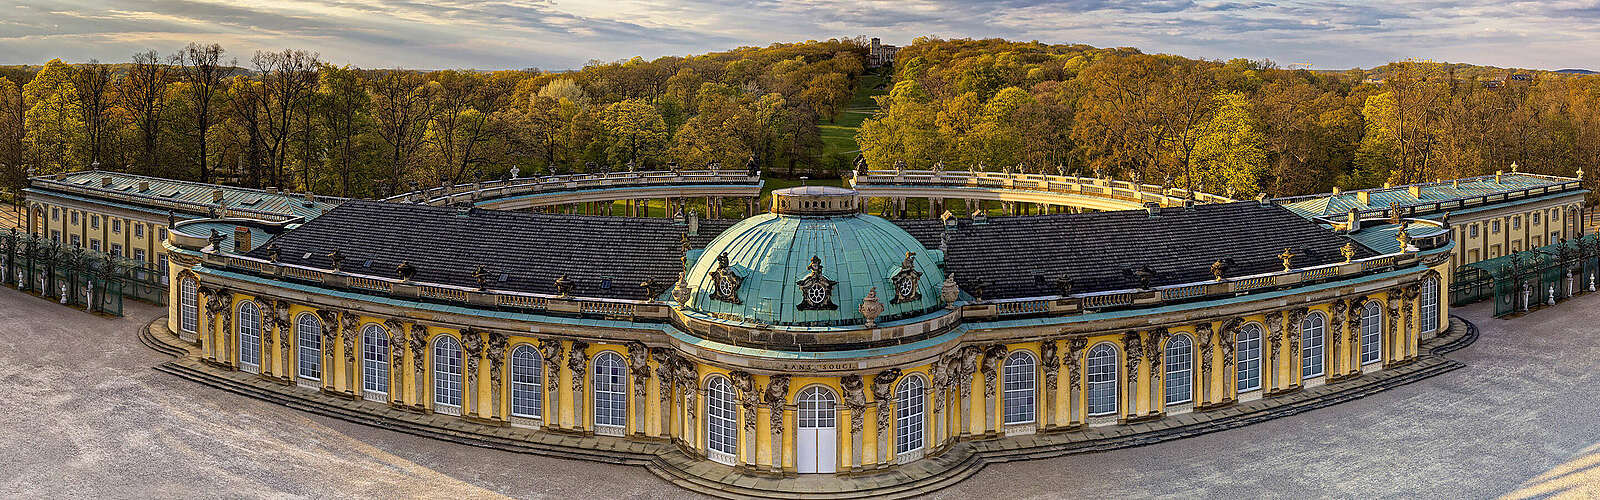 Schloss Sanssouci,
        
    

        Foto: PMSG/SPSG/André Stiebitz